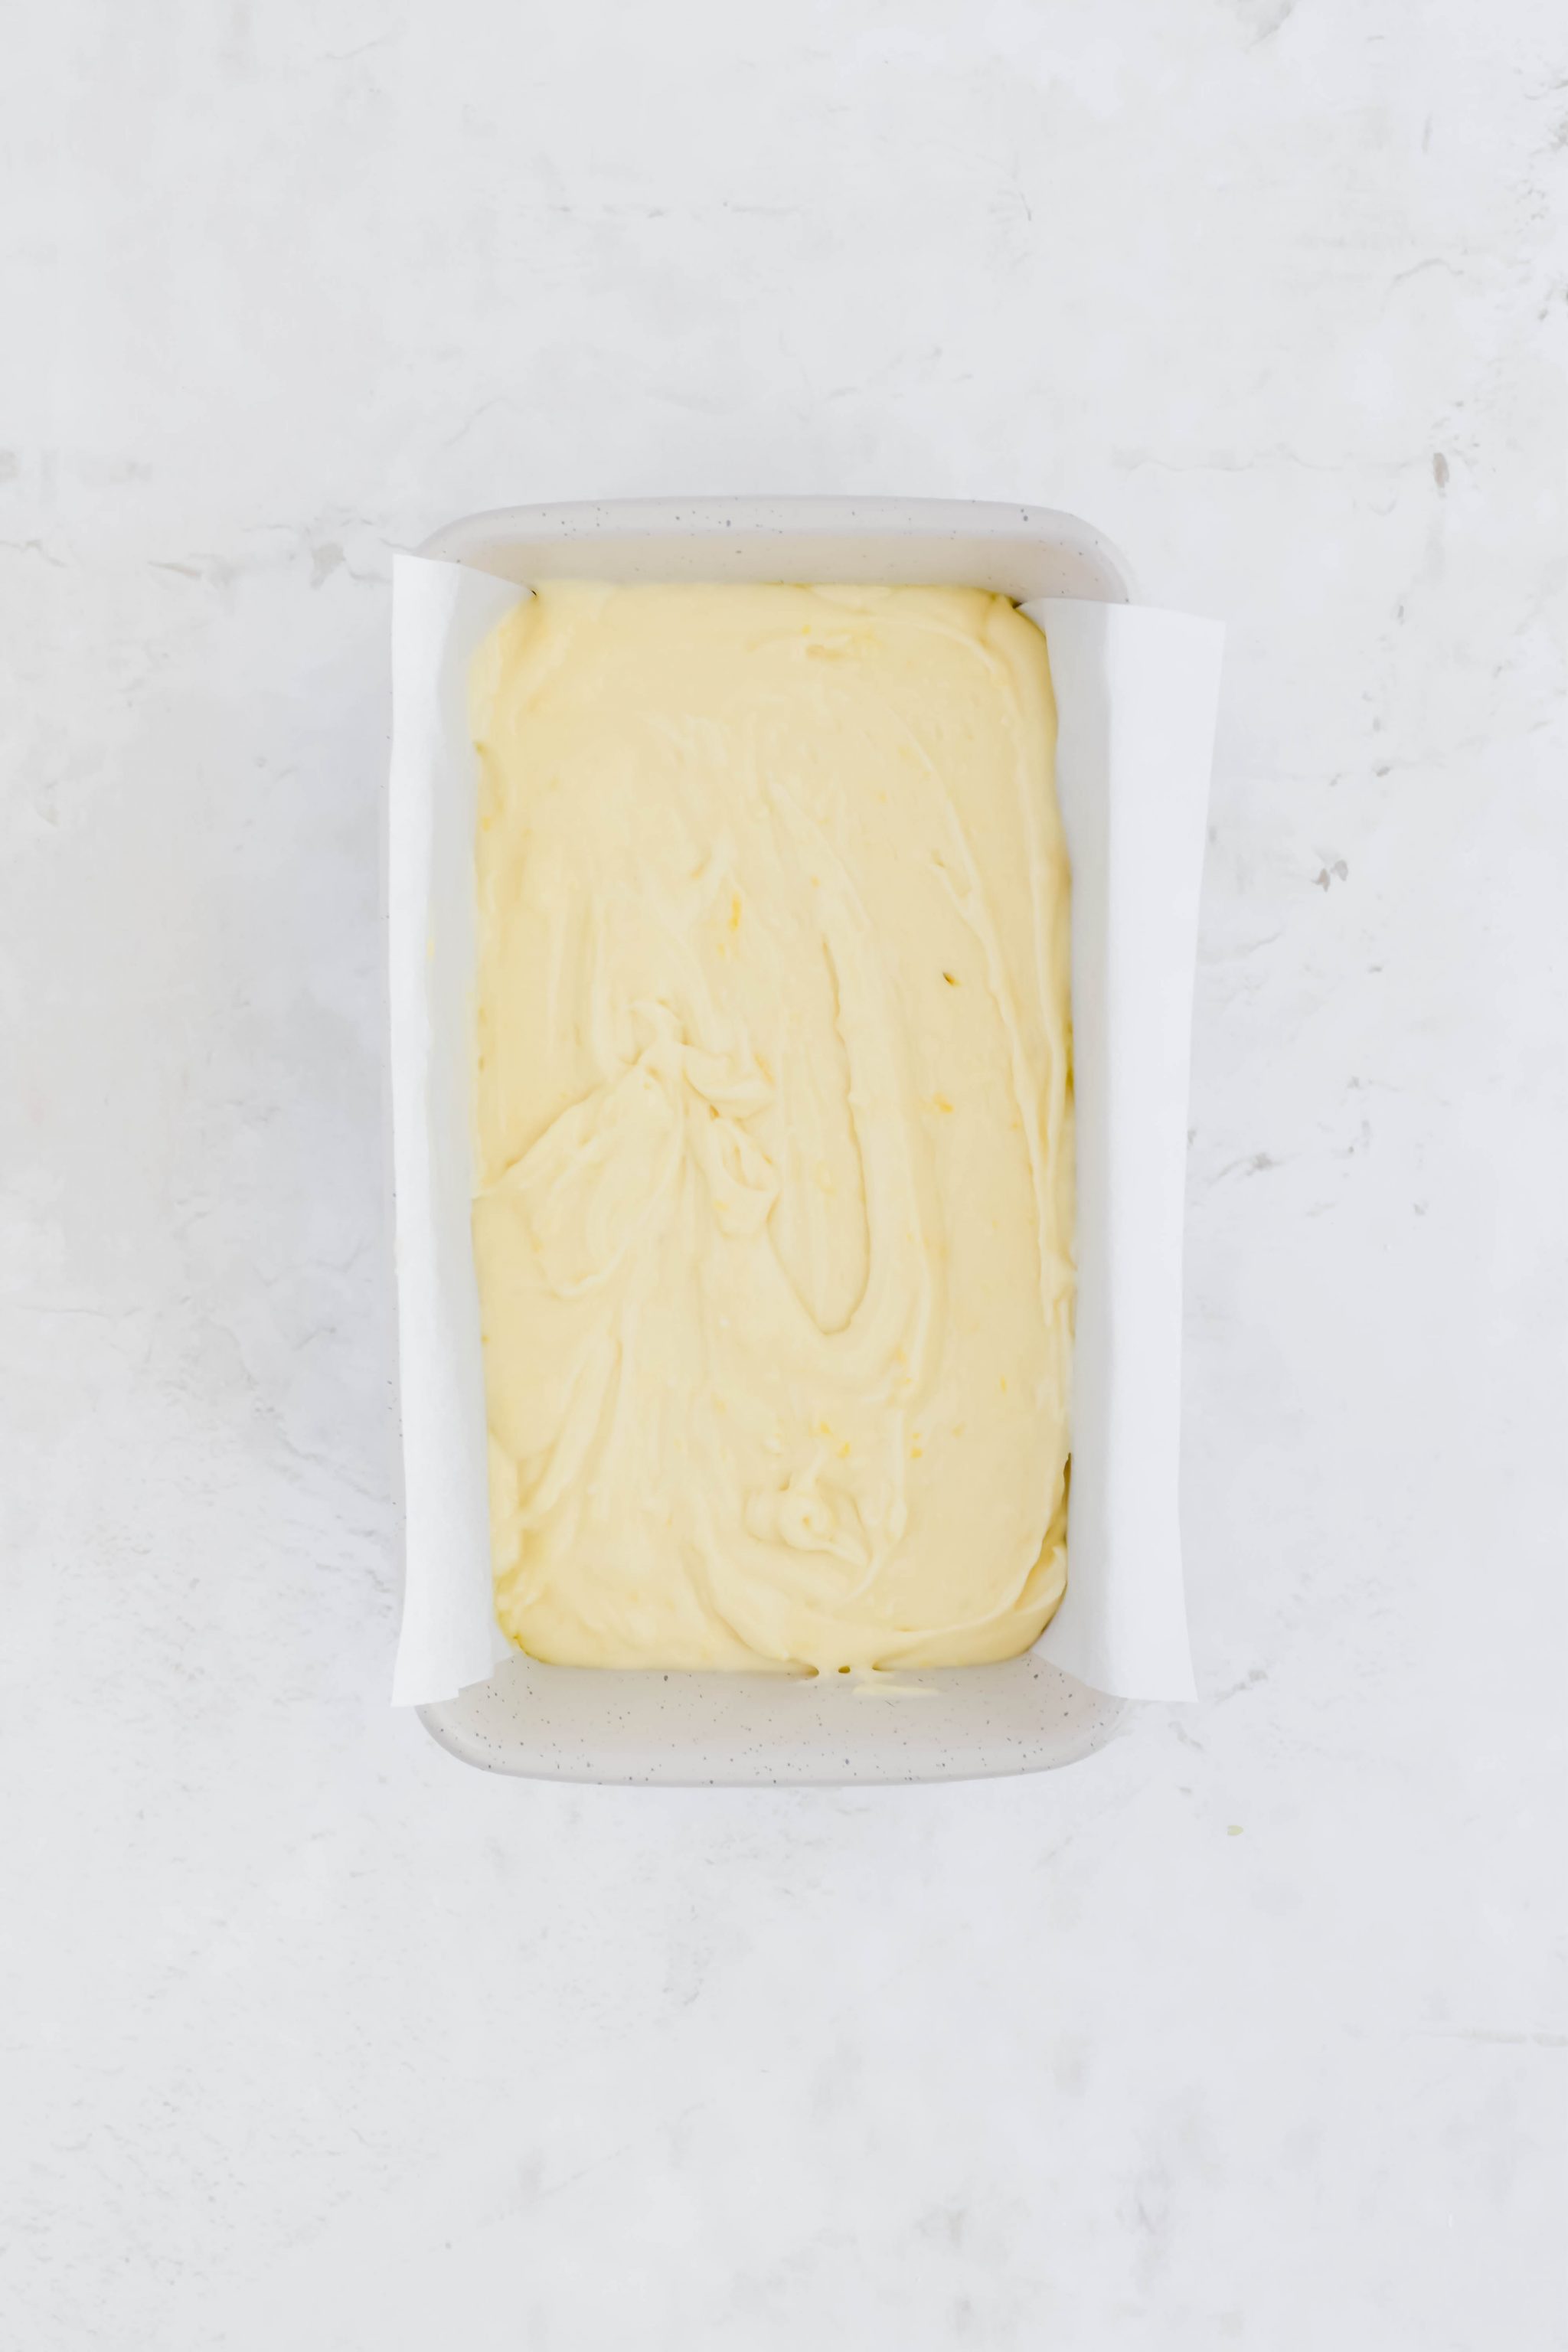 Greek yogurt lemon loaf batter in parchment lined loaf pan on white background.